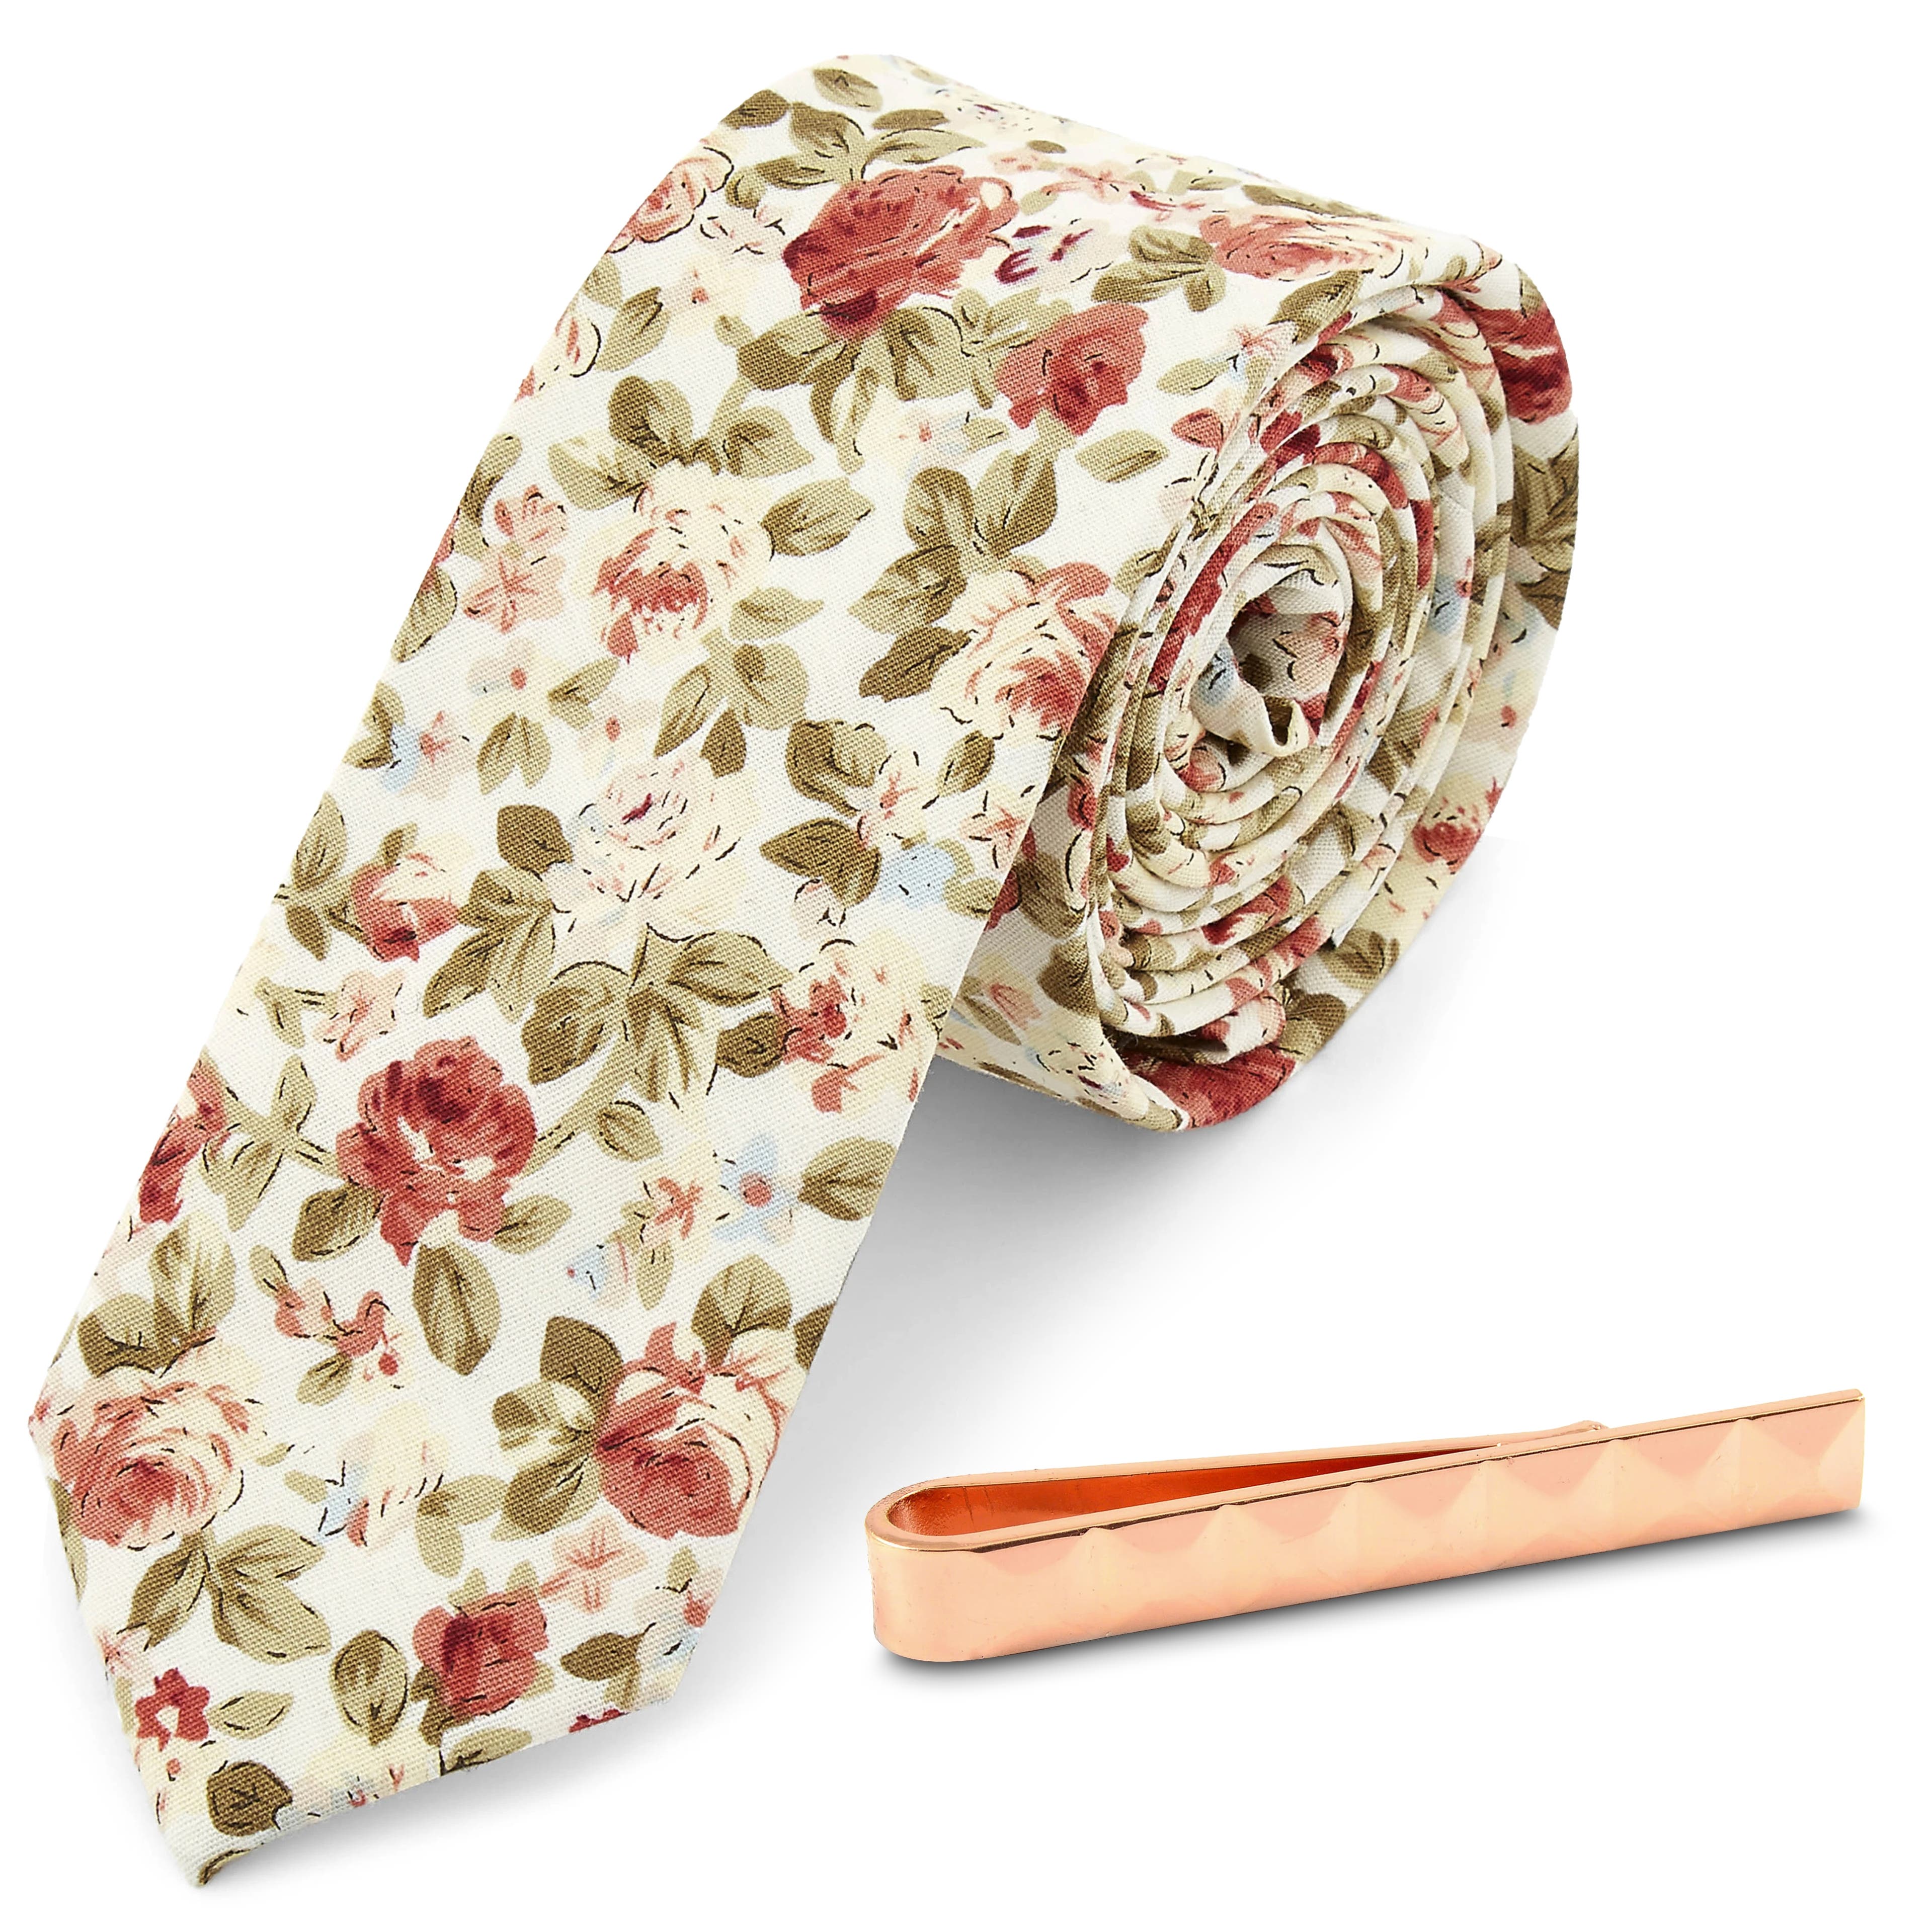 Krawatte mit Blumenmuster und kupferfarbener Krawattenklammer Set